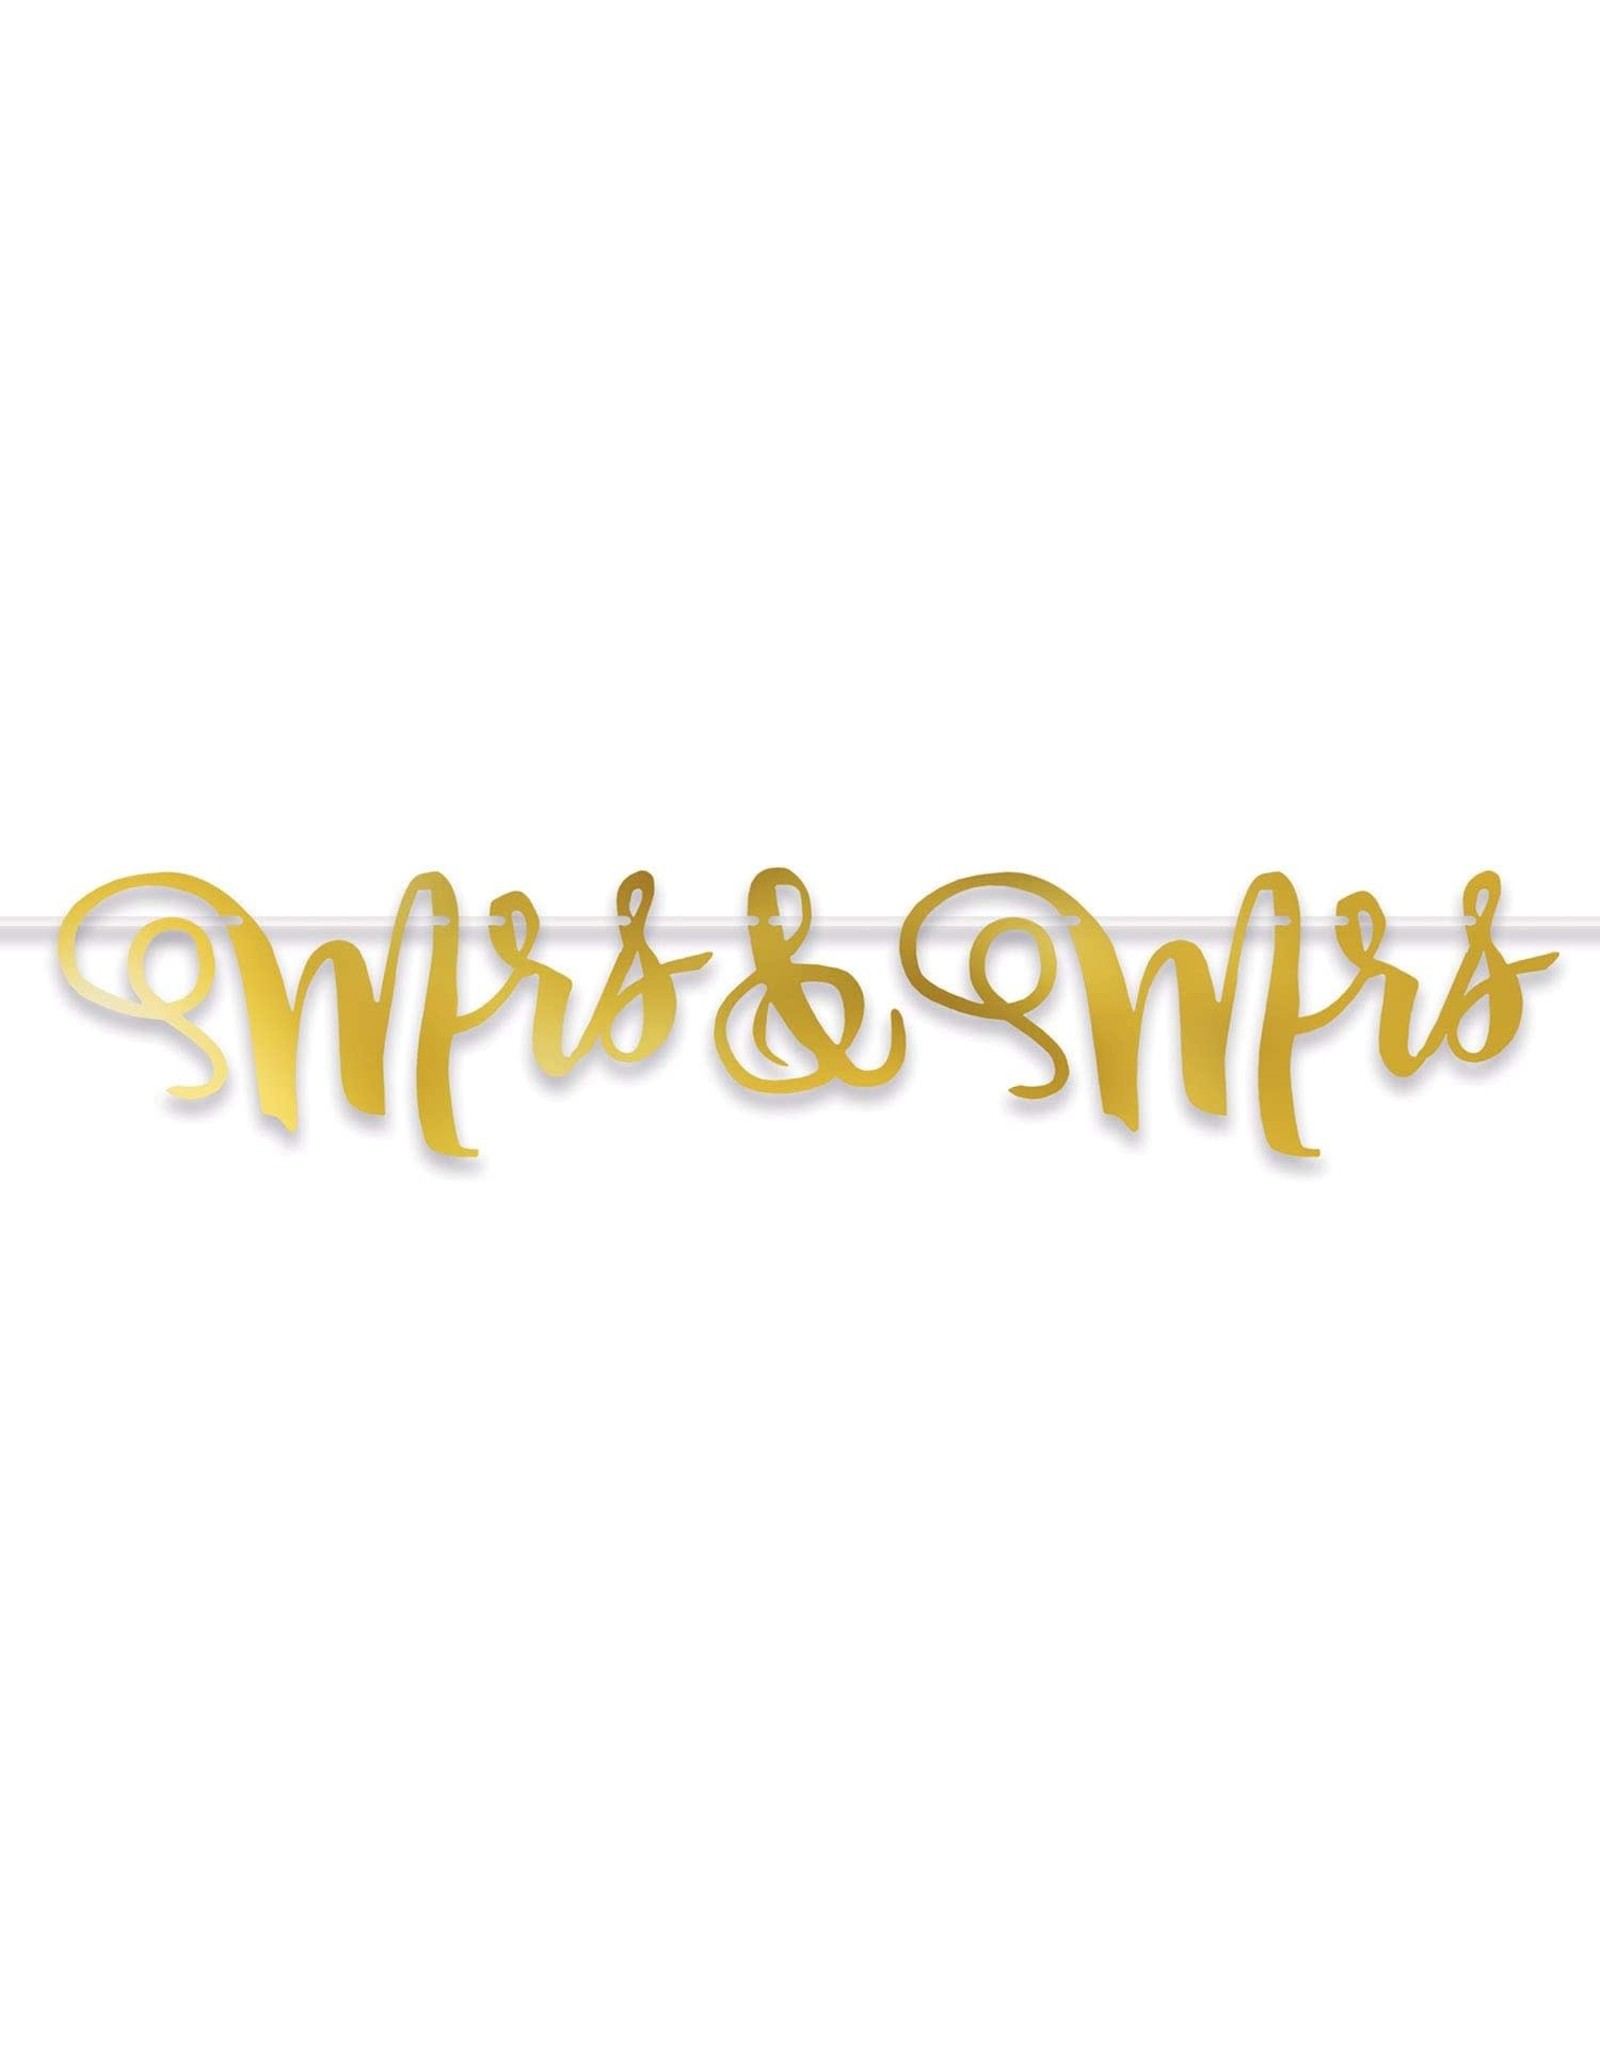 Beistle Mrs & Mrs Metallic Gold Letter Wedding Banner 5ft Streamer